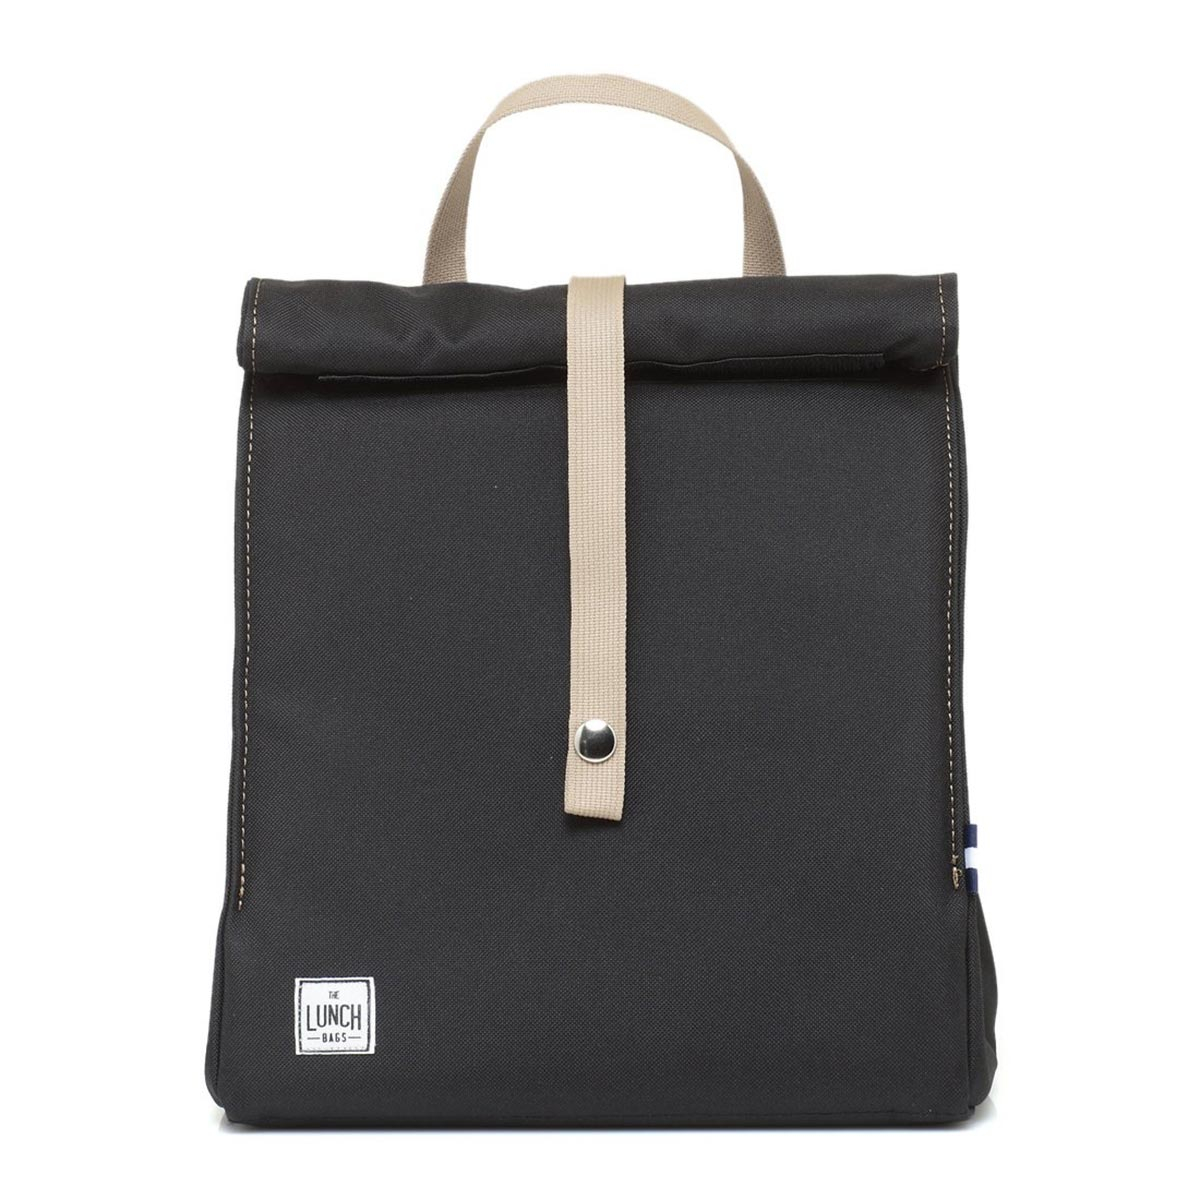 Ισοθερμική Τσάντα Φαγητού (8Lit) + Παγοκύστη The Lunch Bags Original Plus Black 212517